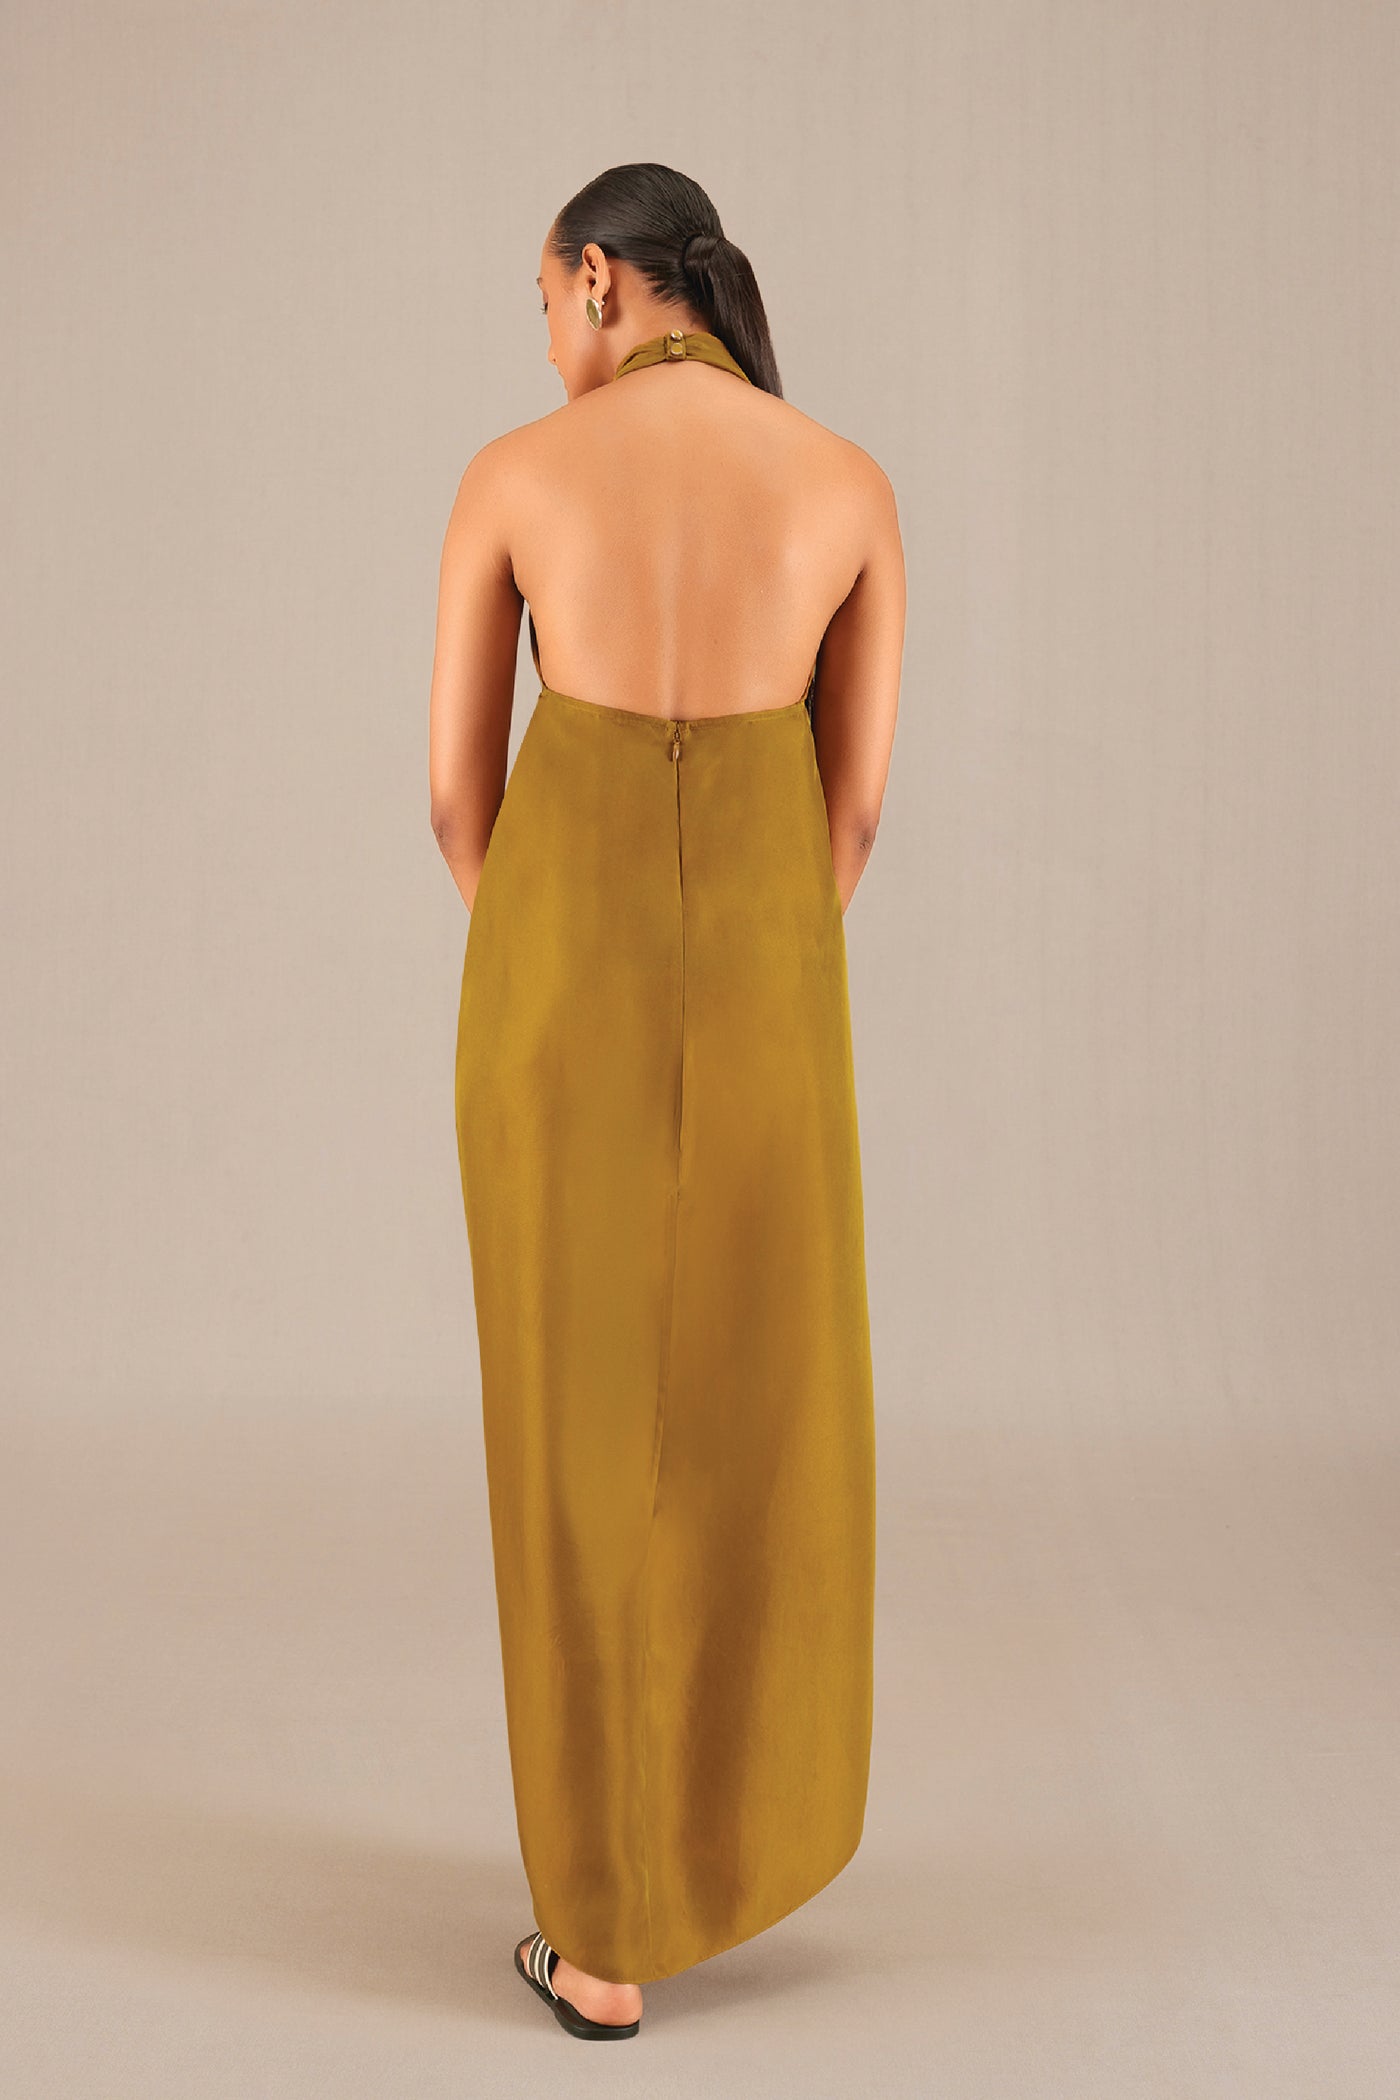 AMPM Ezra Dress Set indian designer wear online shopping melange singapore